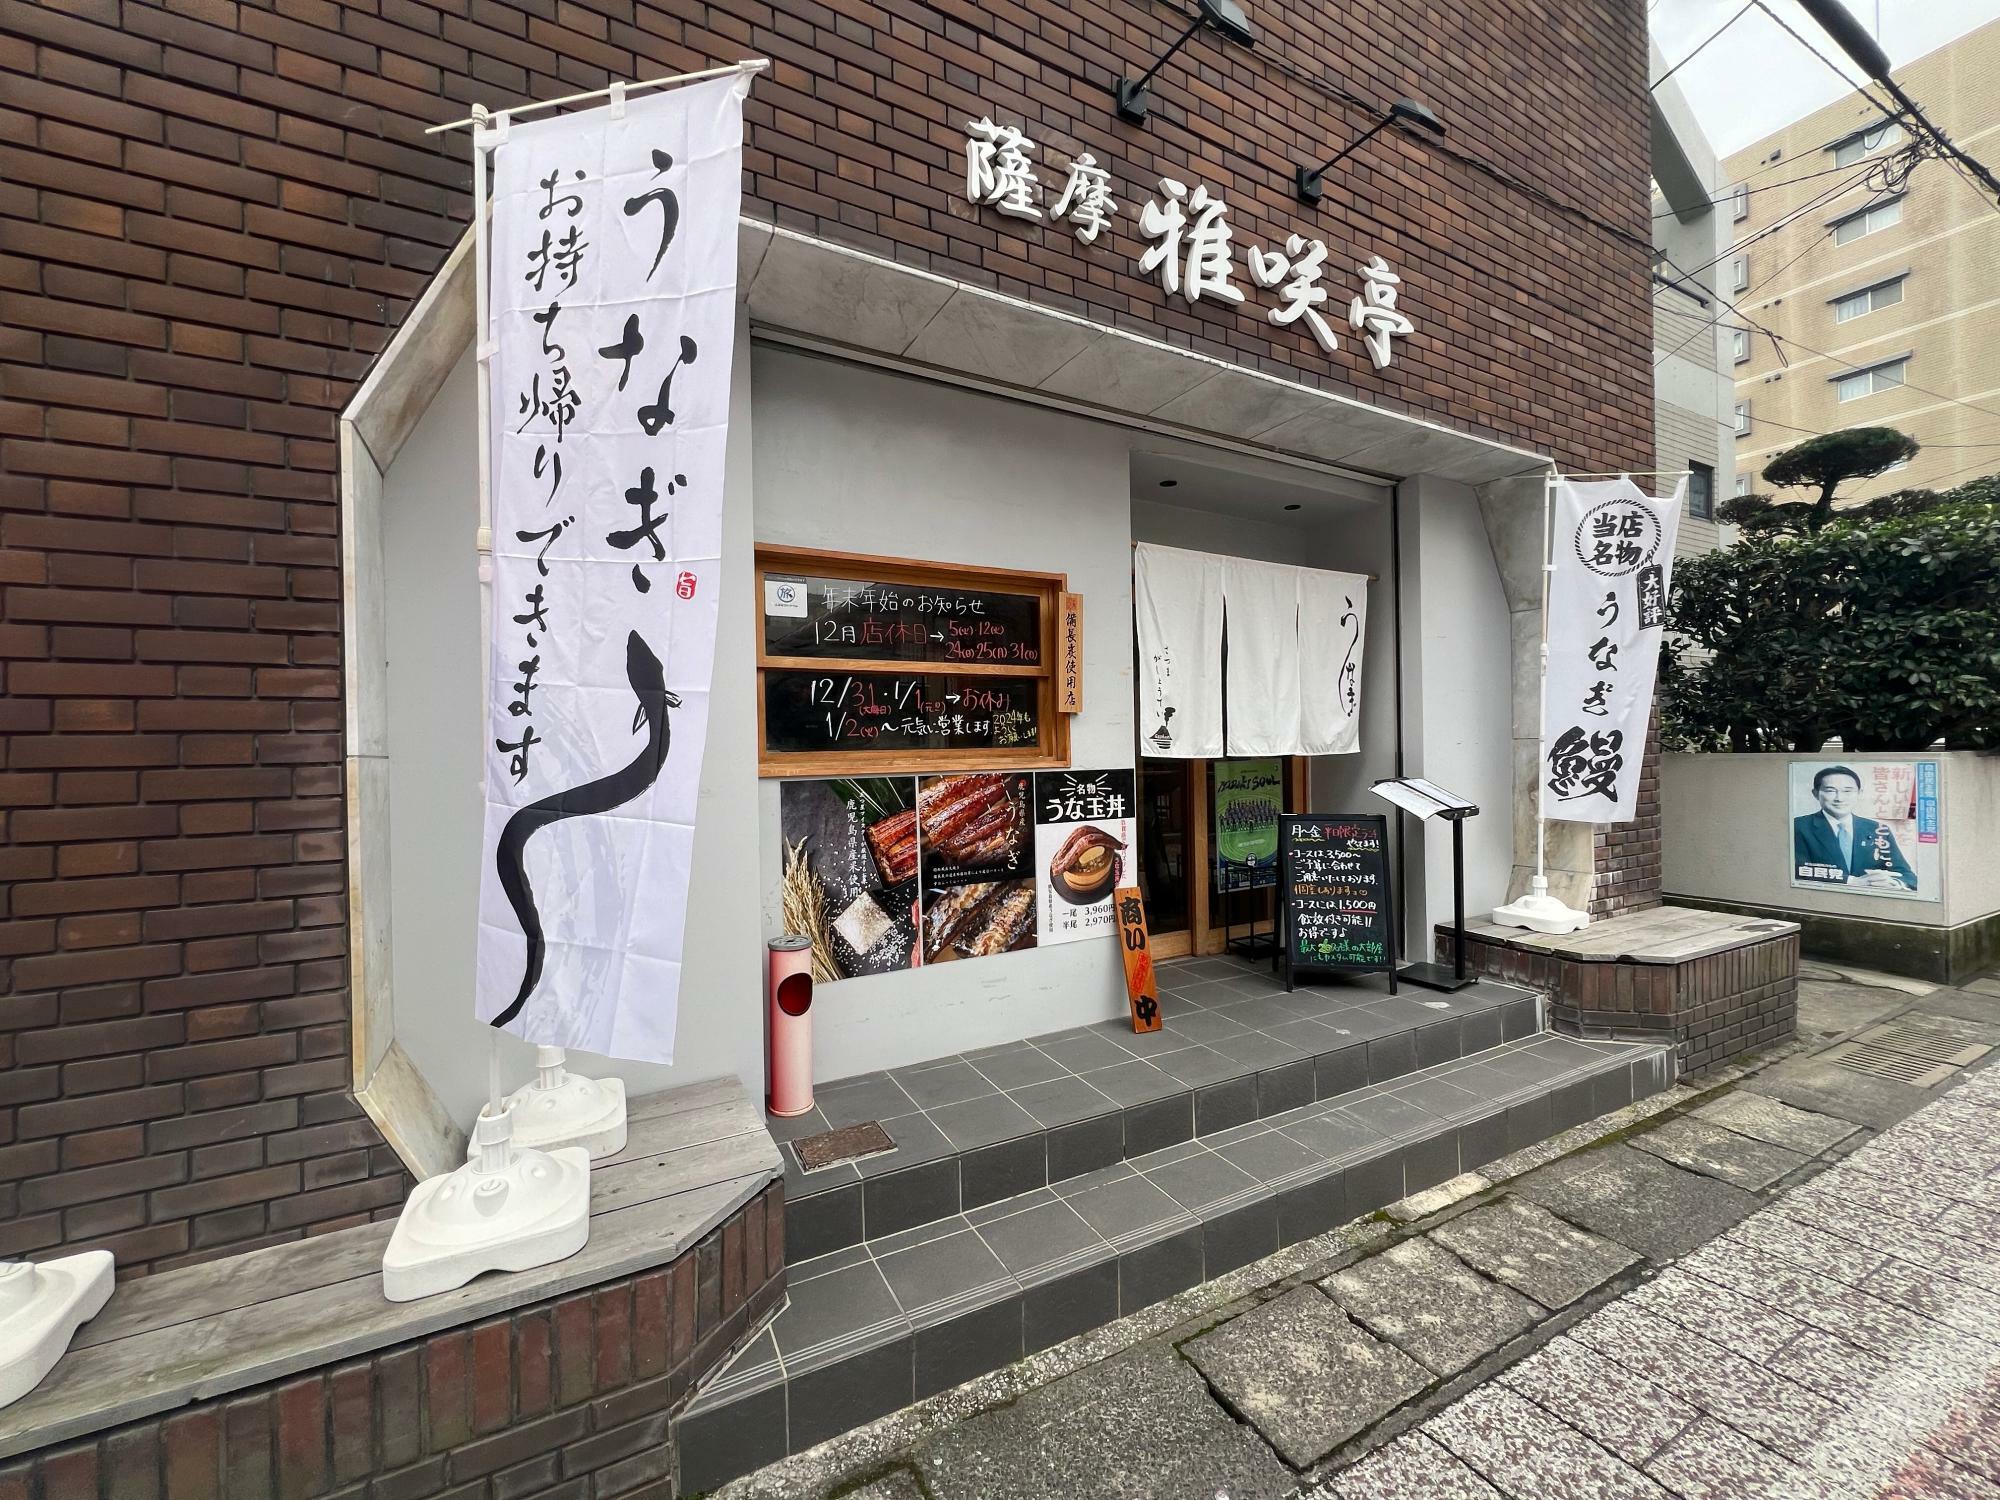 樋之口町の薩摩雅咲亭さん、店先はいい匂いが漂っています